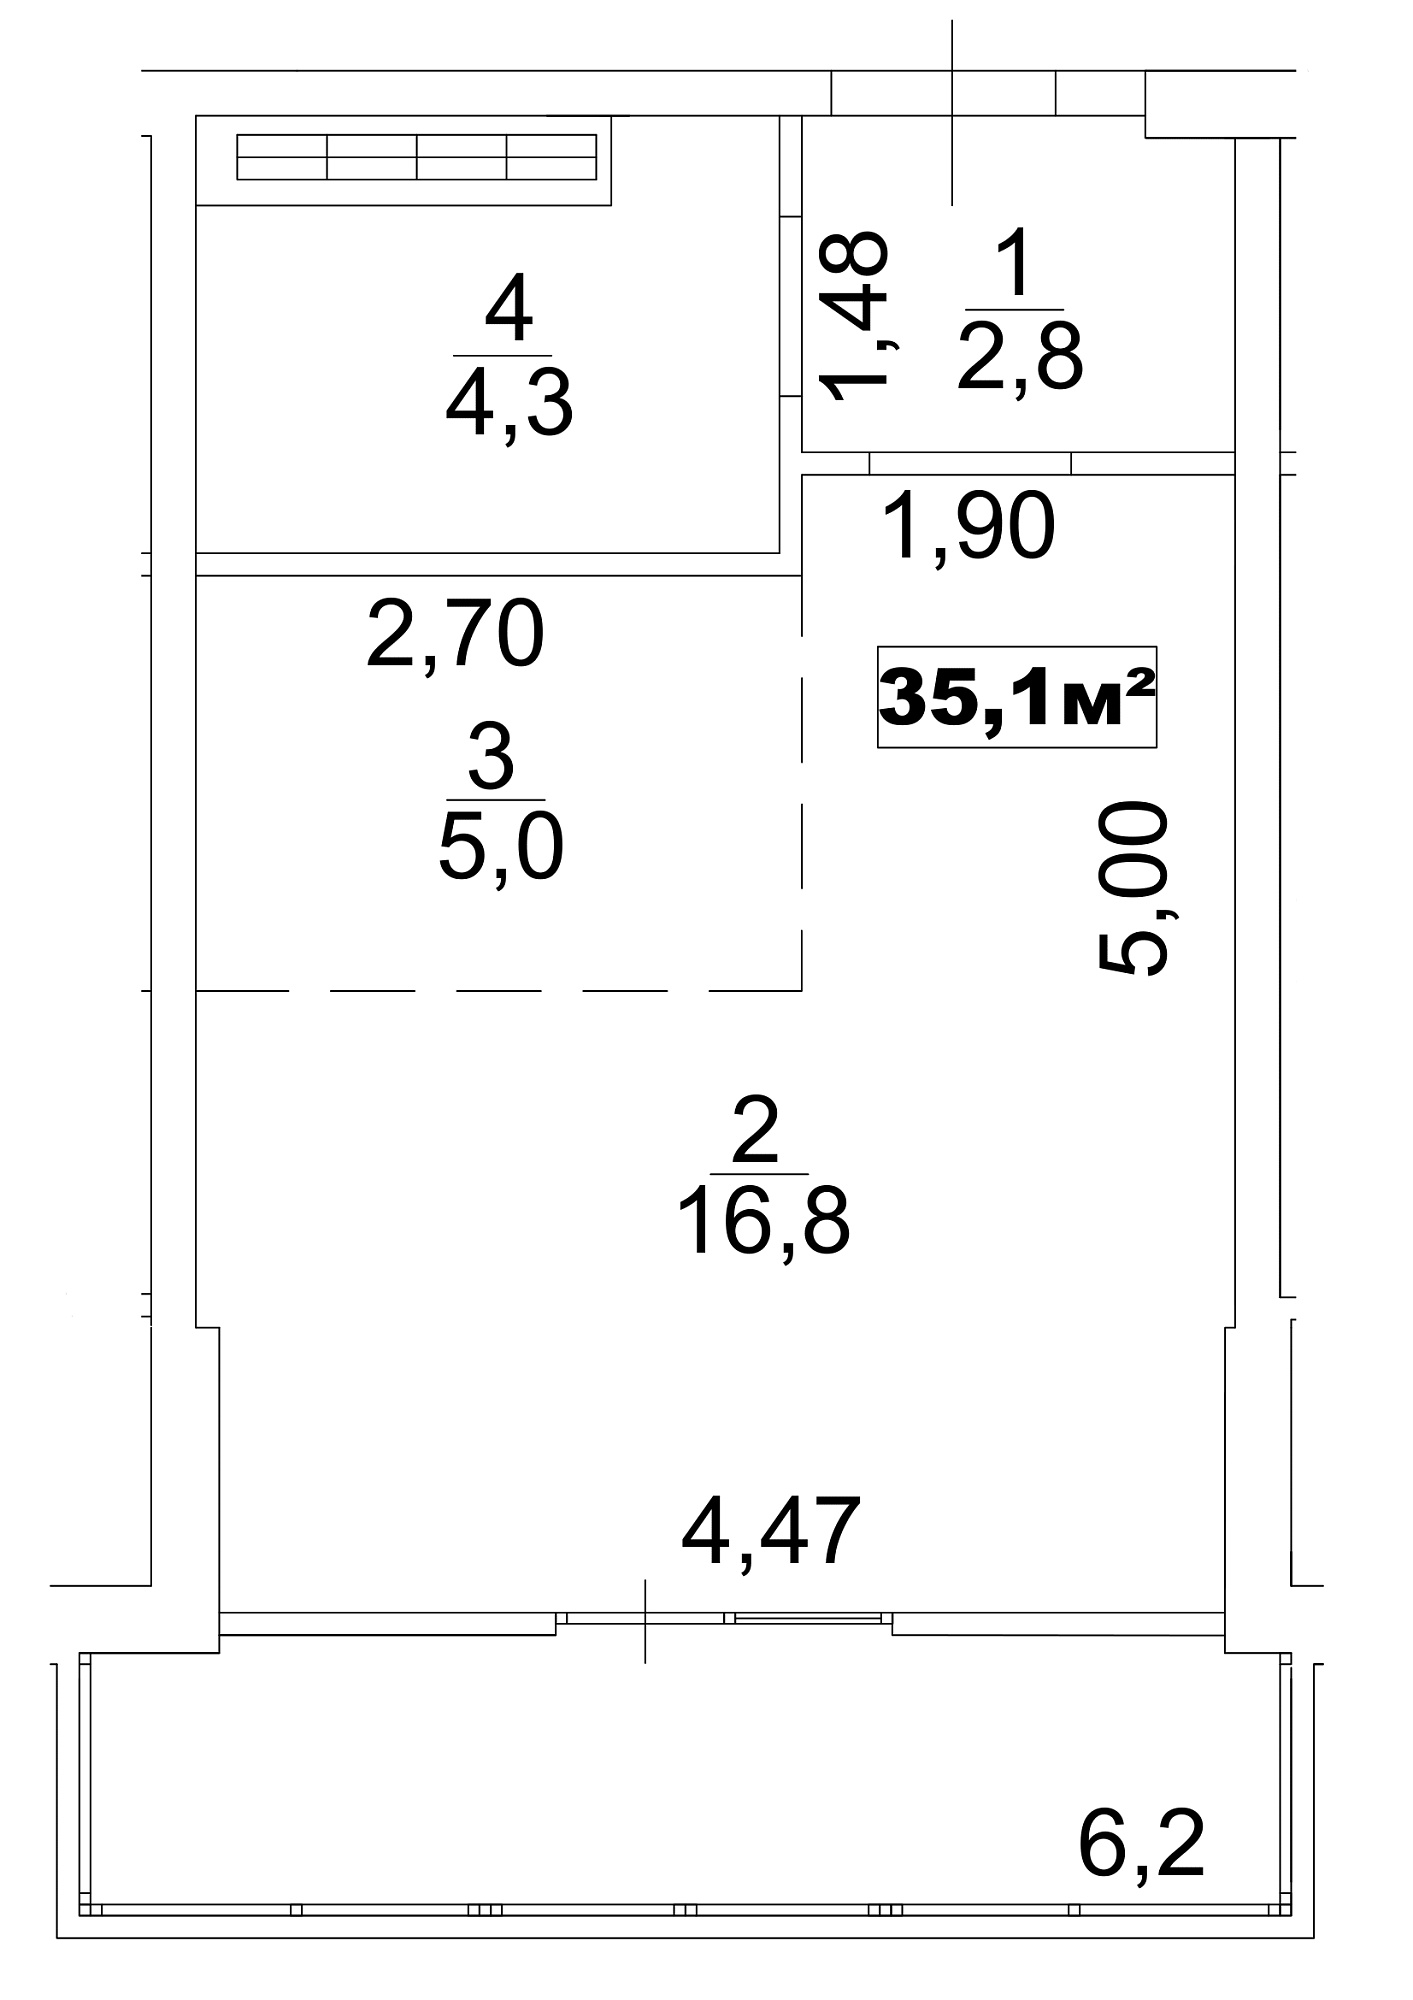 Планування Smart-квартира площею 35.1м2, AB-13-02/0007б.